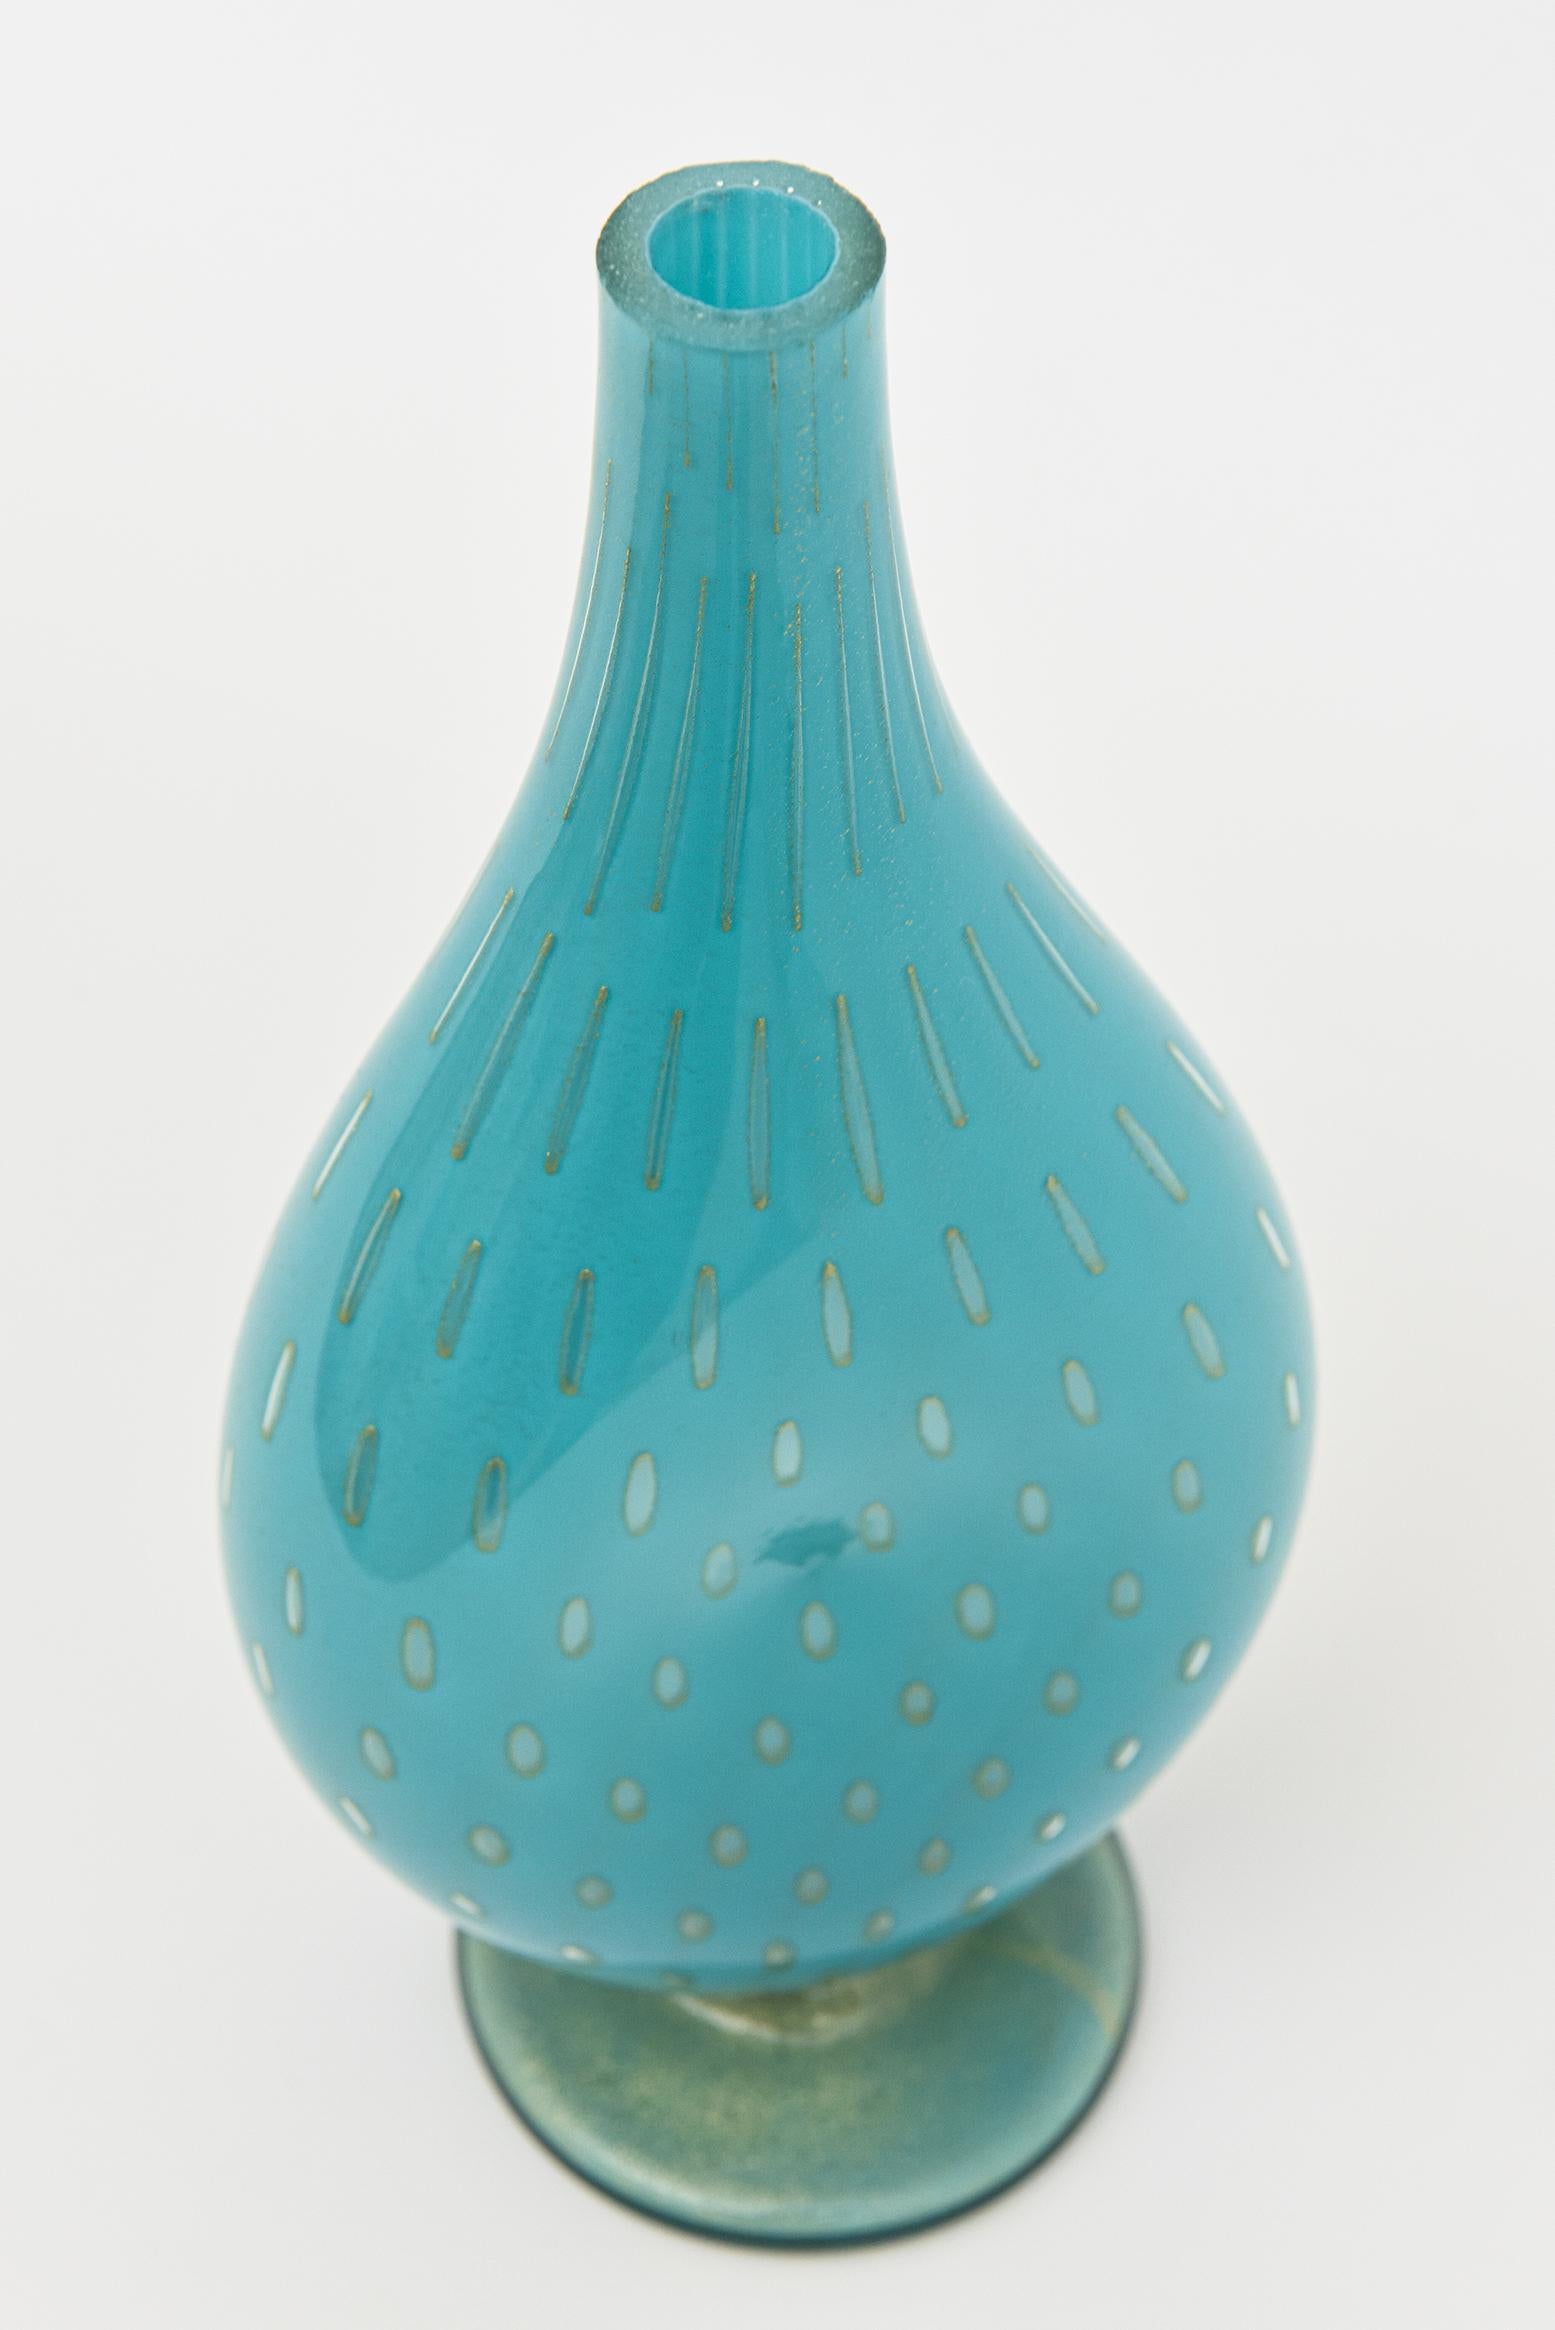 Diese wunderschöne Vintage Murano Glasflasche, Gefäß oder Objekt ist die spektakuläre türkise Farbe, die sehr begehrt und schwer zu bekommen ist. es ist von den Meistern des Glases Barovier &Toso. Er hat eine flach geschliffene, polierte Oberseite.